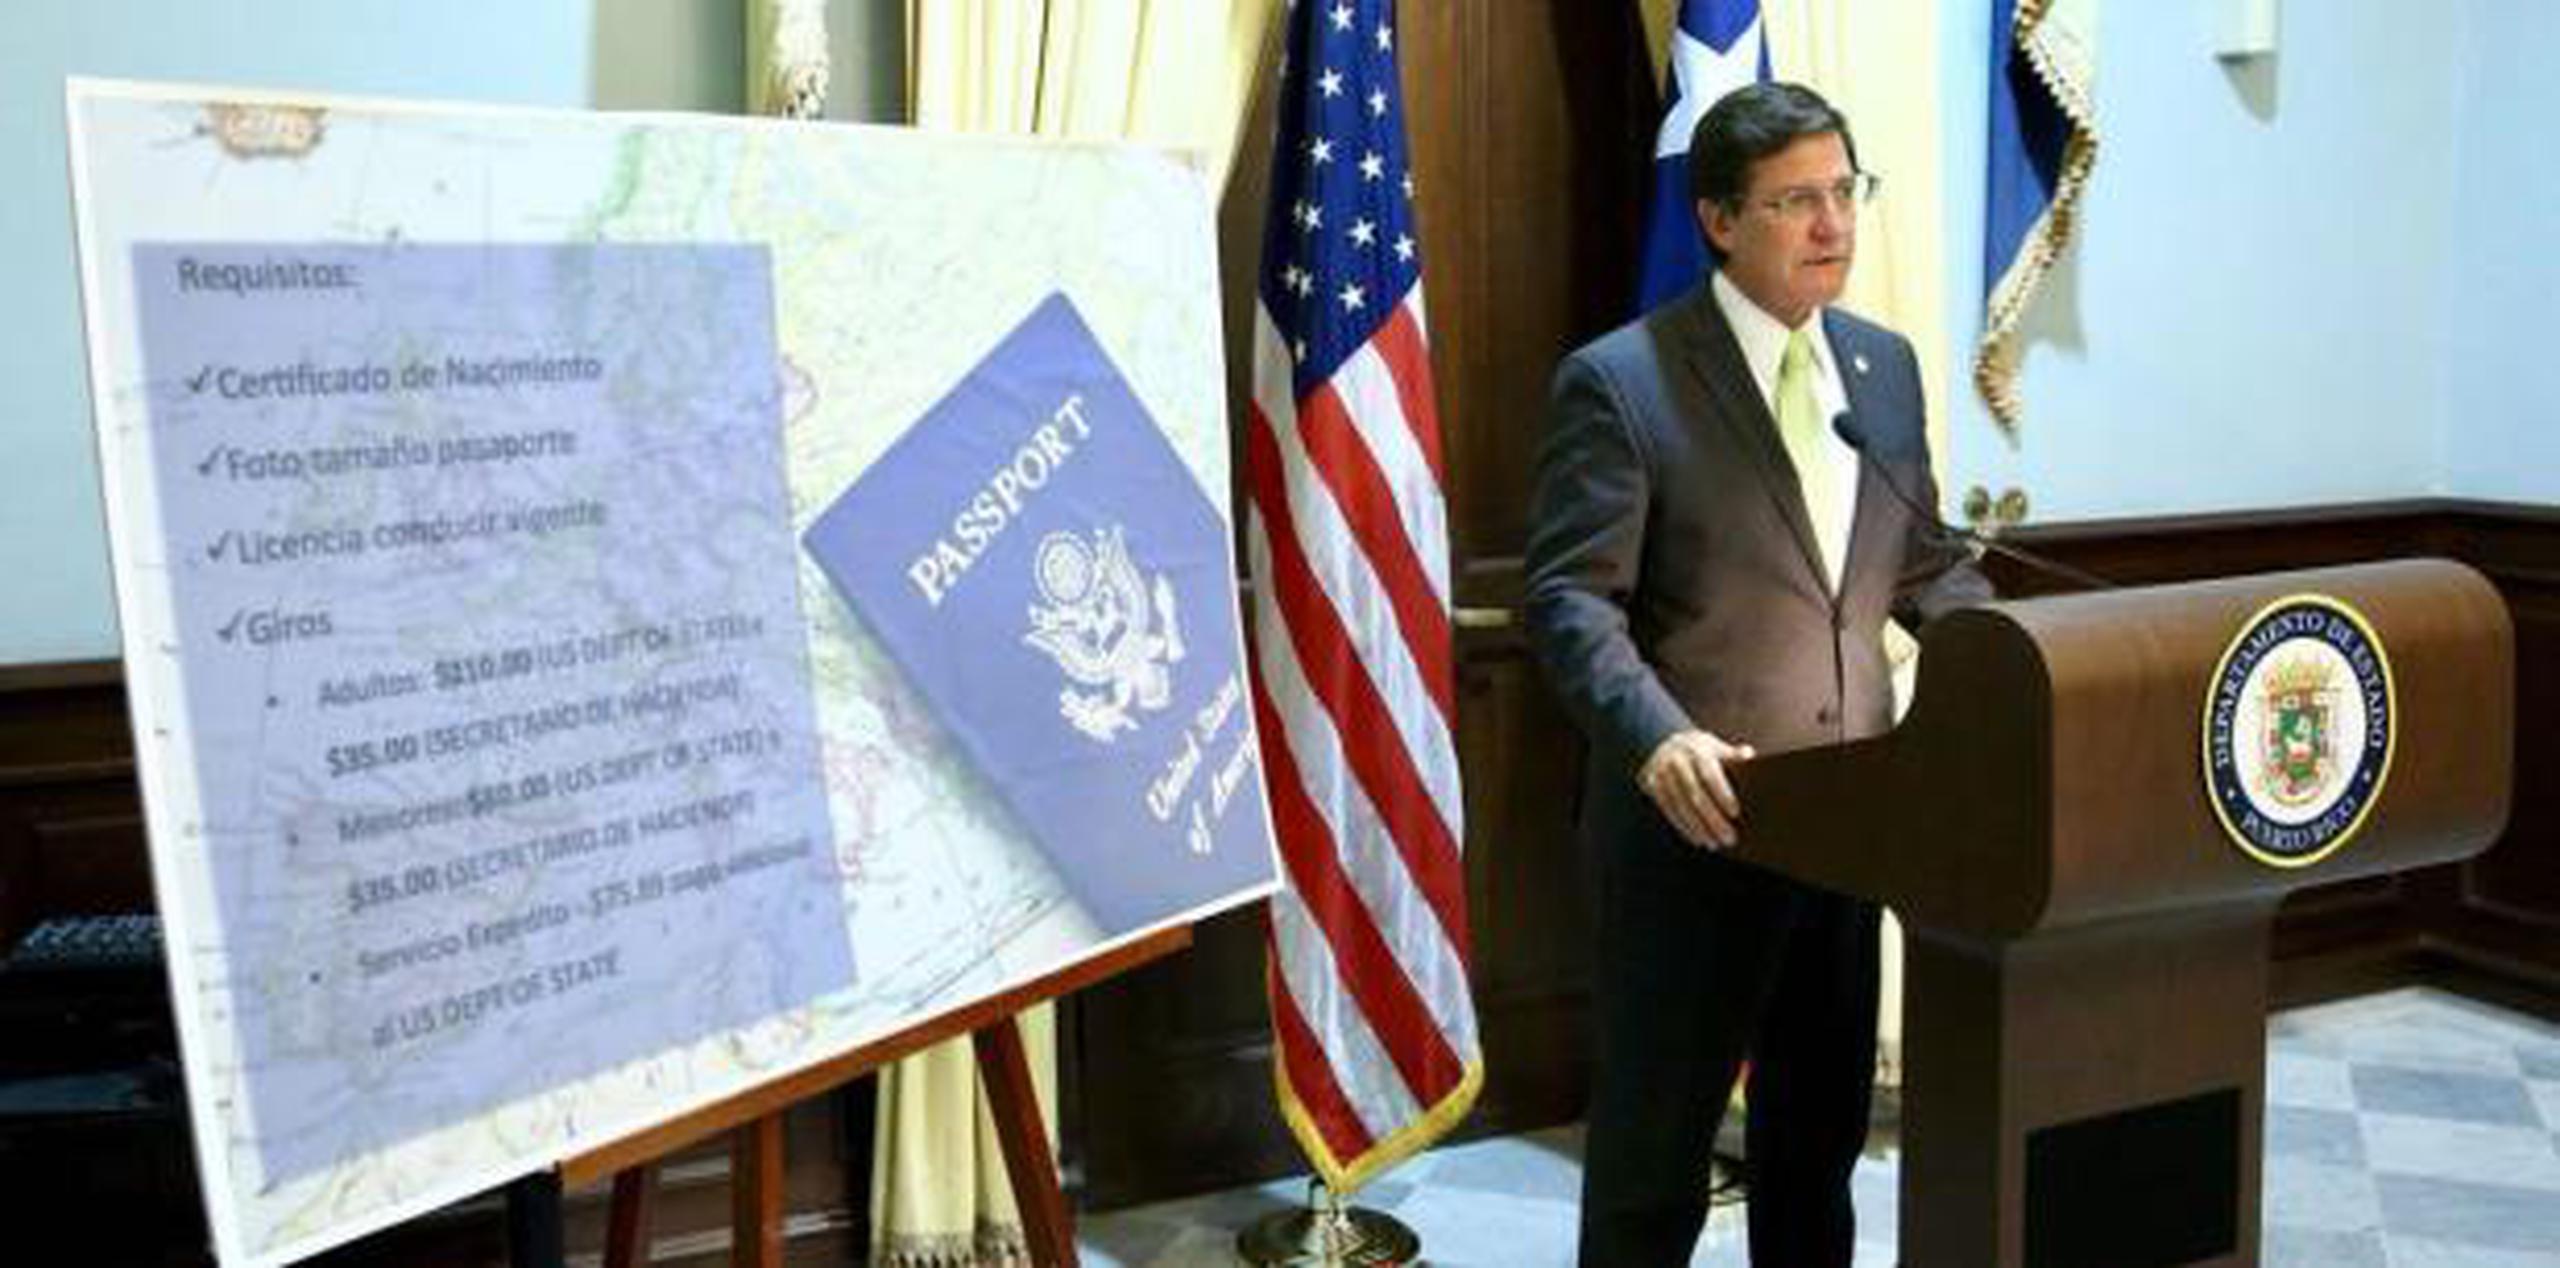 El pasaporte y/o la tarjeta de pasaporte son identificaciones válidas, anunció hoy en conferencia de prensa el secretario de Estado, Luis G. Rivera Marín. (Suministrada)